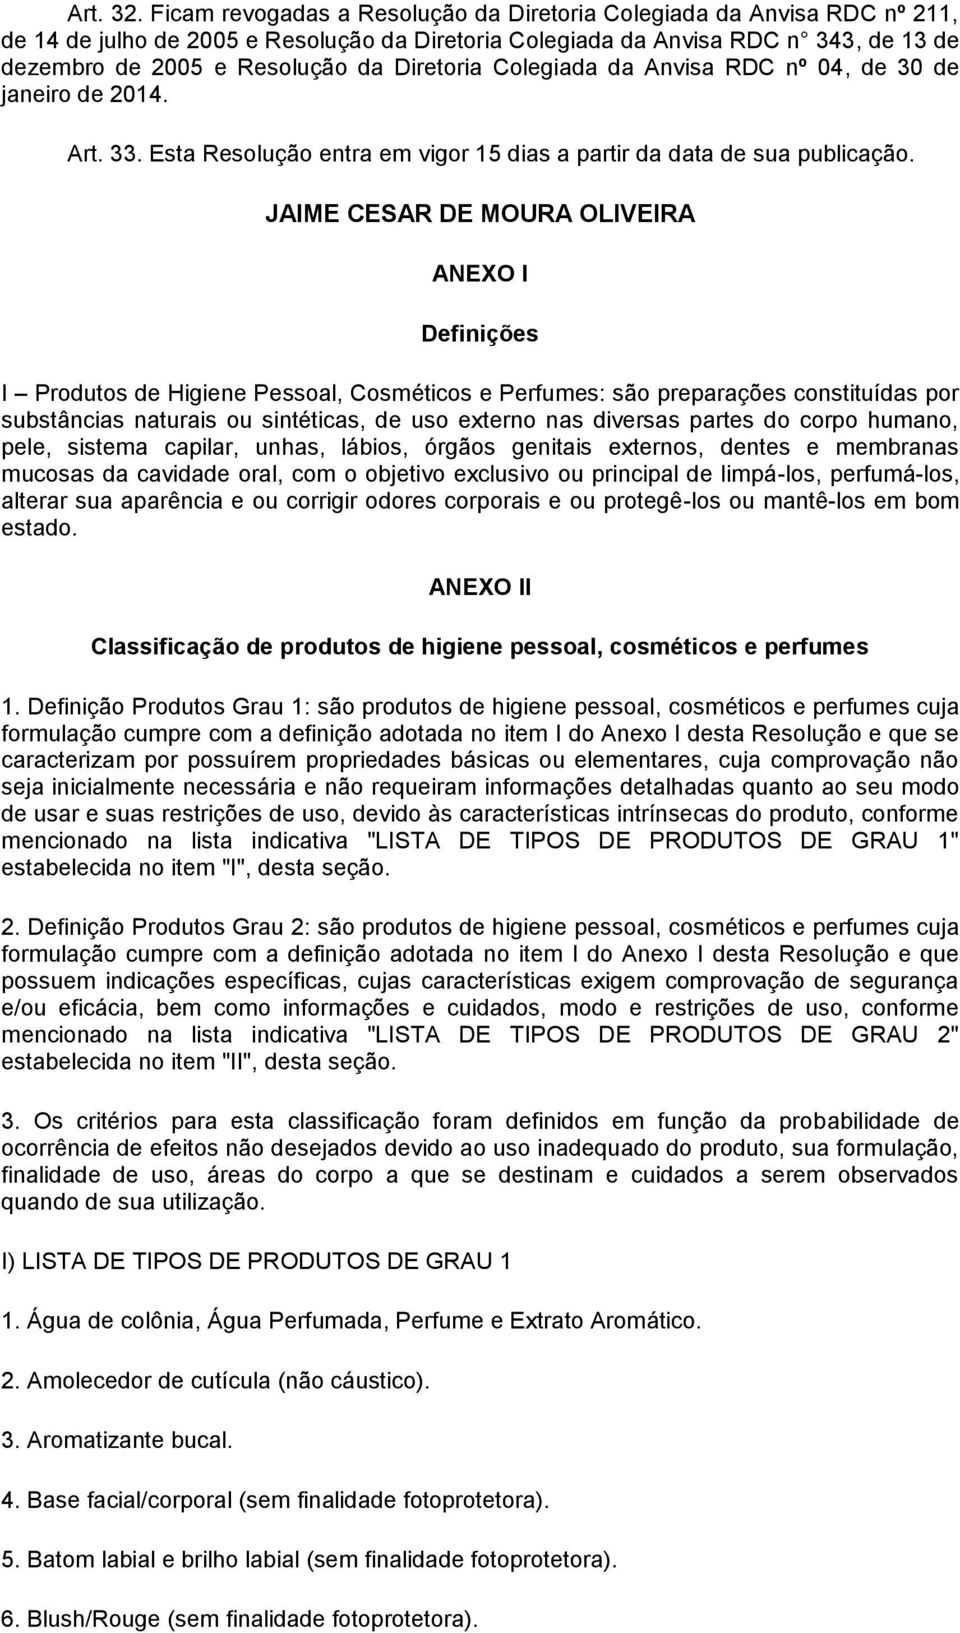 Diretoria Colegiada da Anvisa RDC nº 04, de 30 de janeiro de 2014. Art. 33. Esta Resolução entra em vigor 15 dias a partir da data de sua publicação.